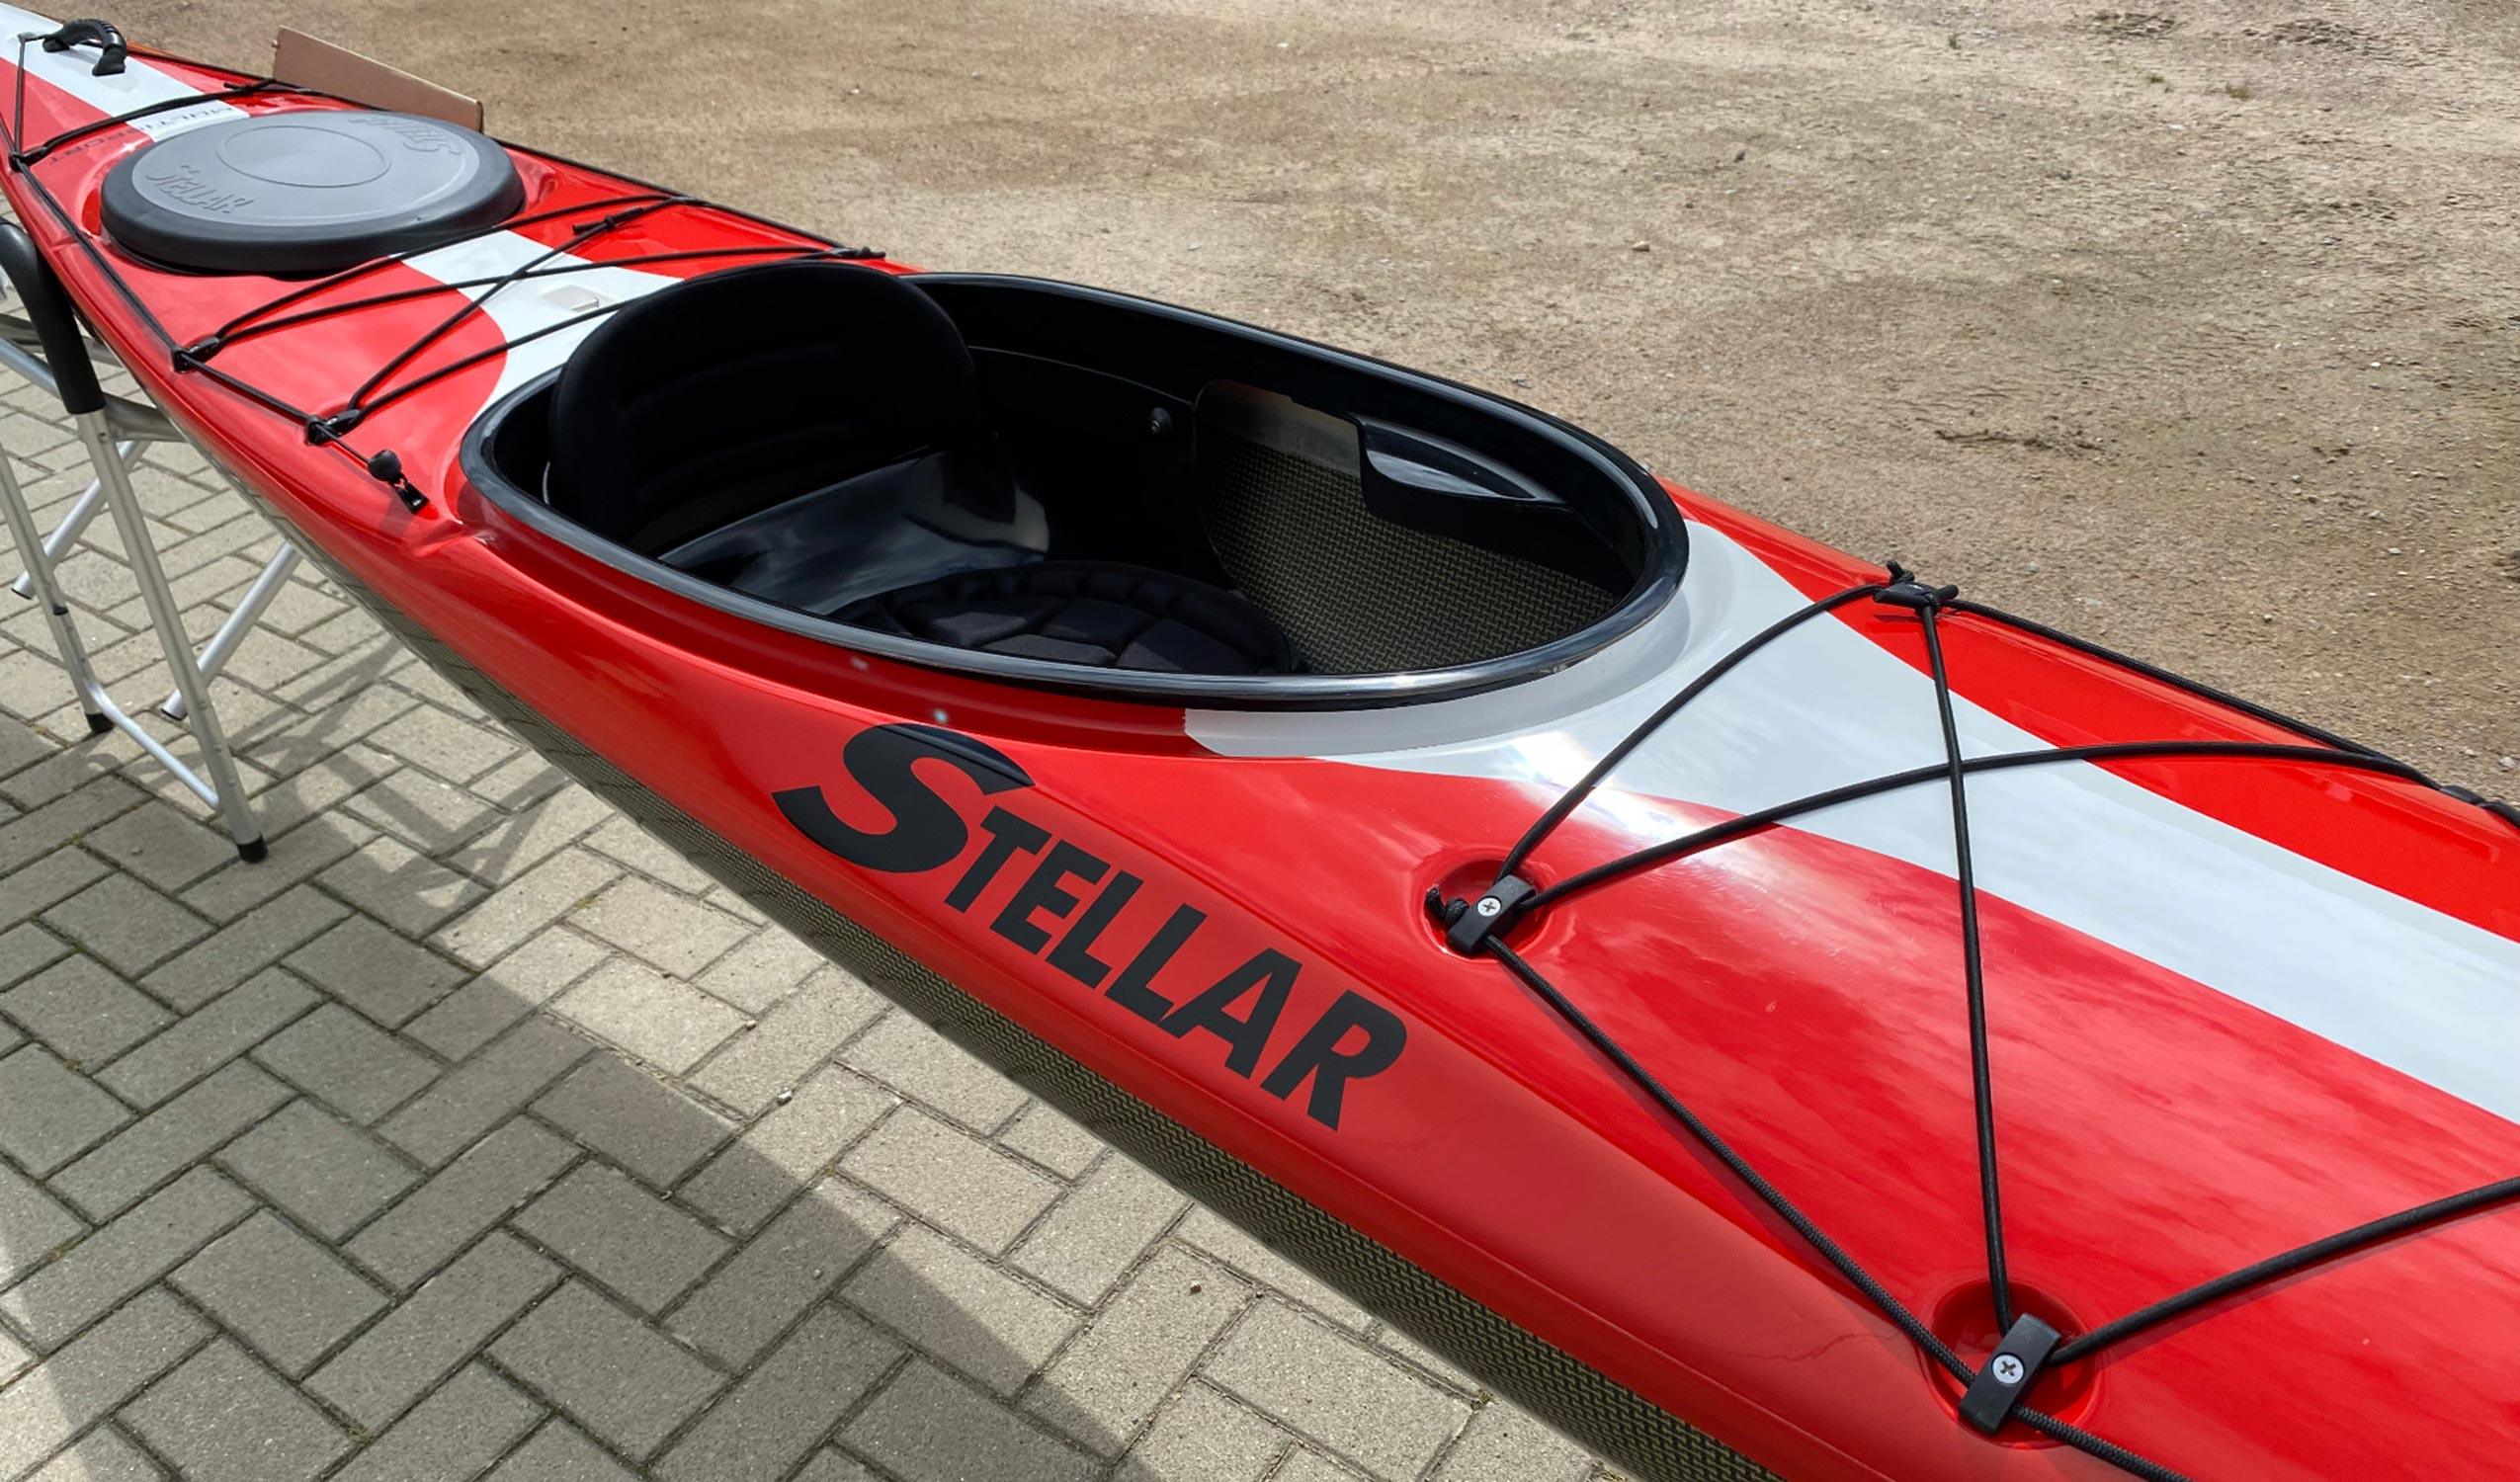 Produktbild von Kajak " S15LV Multisport-rot weiß " der Marke STELLAR Lightweight für 3240.00 €. Erhältlich online bei Lite Venture ( www.liteventure.de )